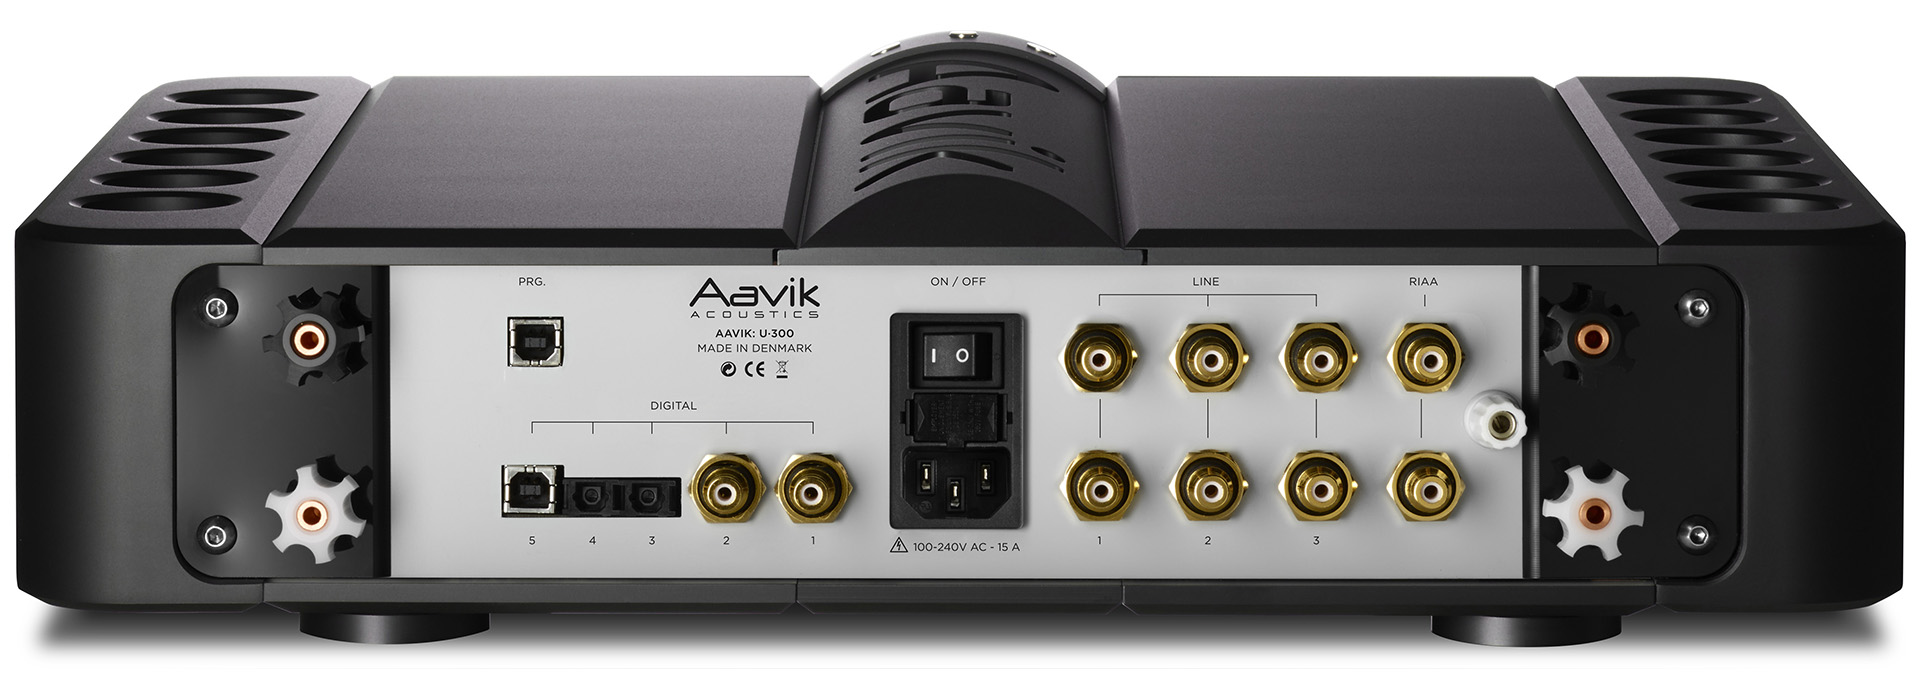 Лучший звук класса D: журнал Stereophile оценил интегральный усилитель Aavik U380